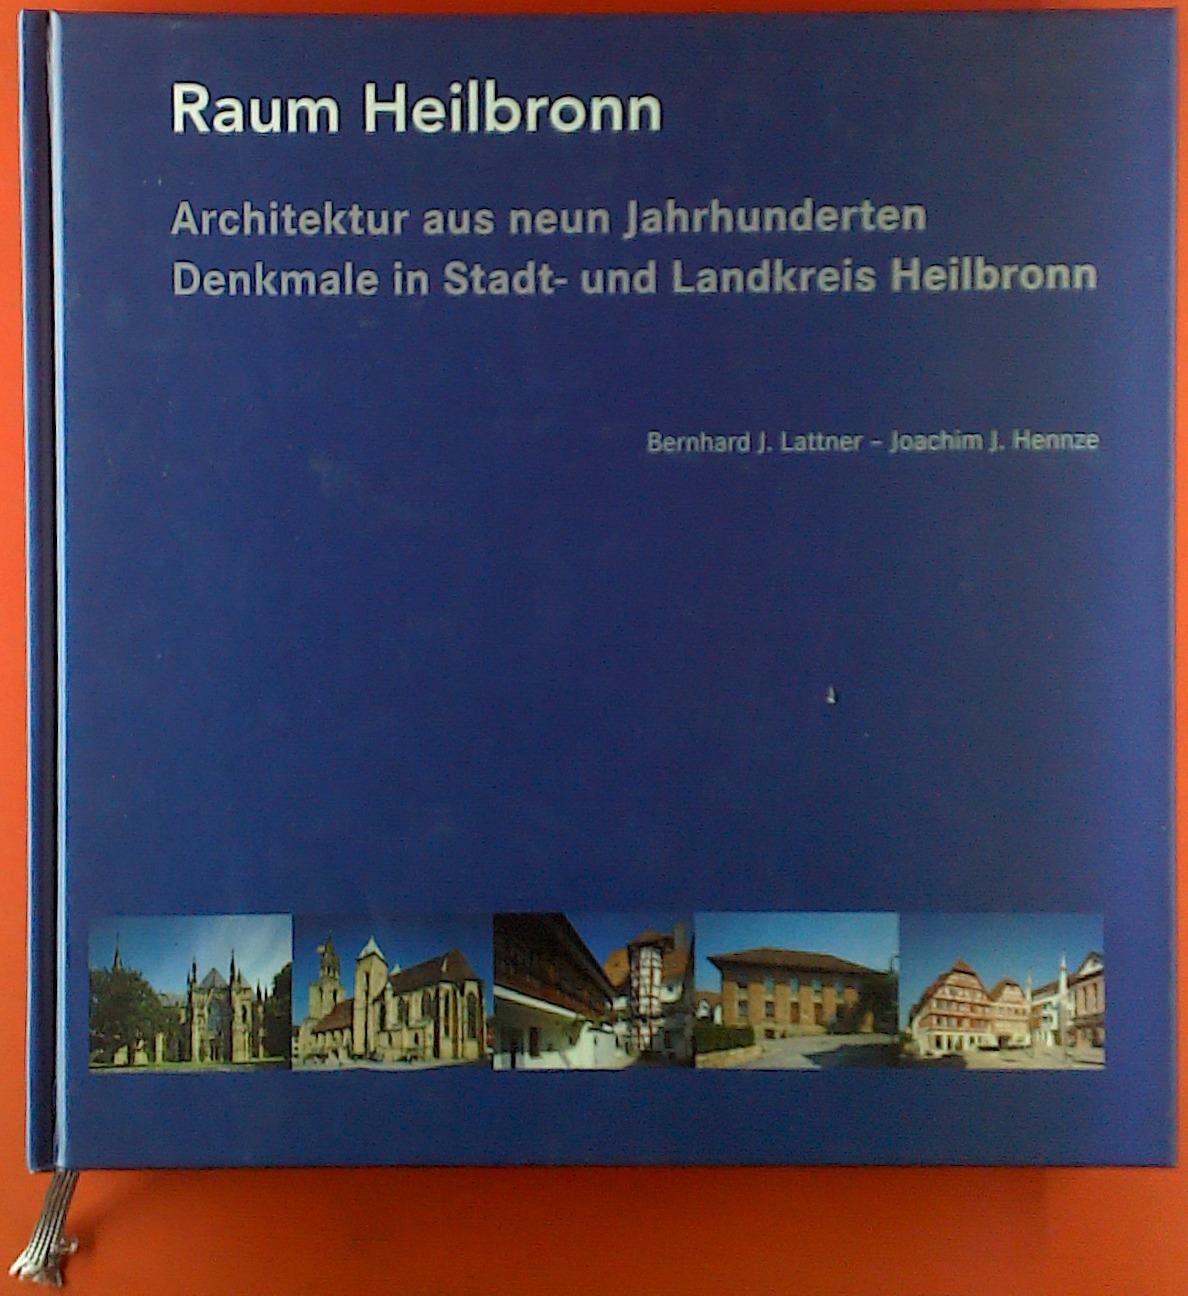 Raum Heilbronn. Architektur aus neuen Jahrhunderten. Denkmale in Stadt- und Landkreis Heilbronn - Bernhard J. Lattner, Joachim J. Hennze